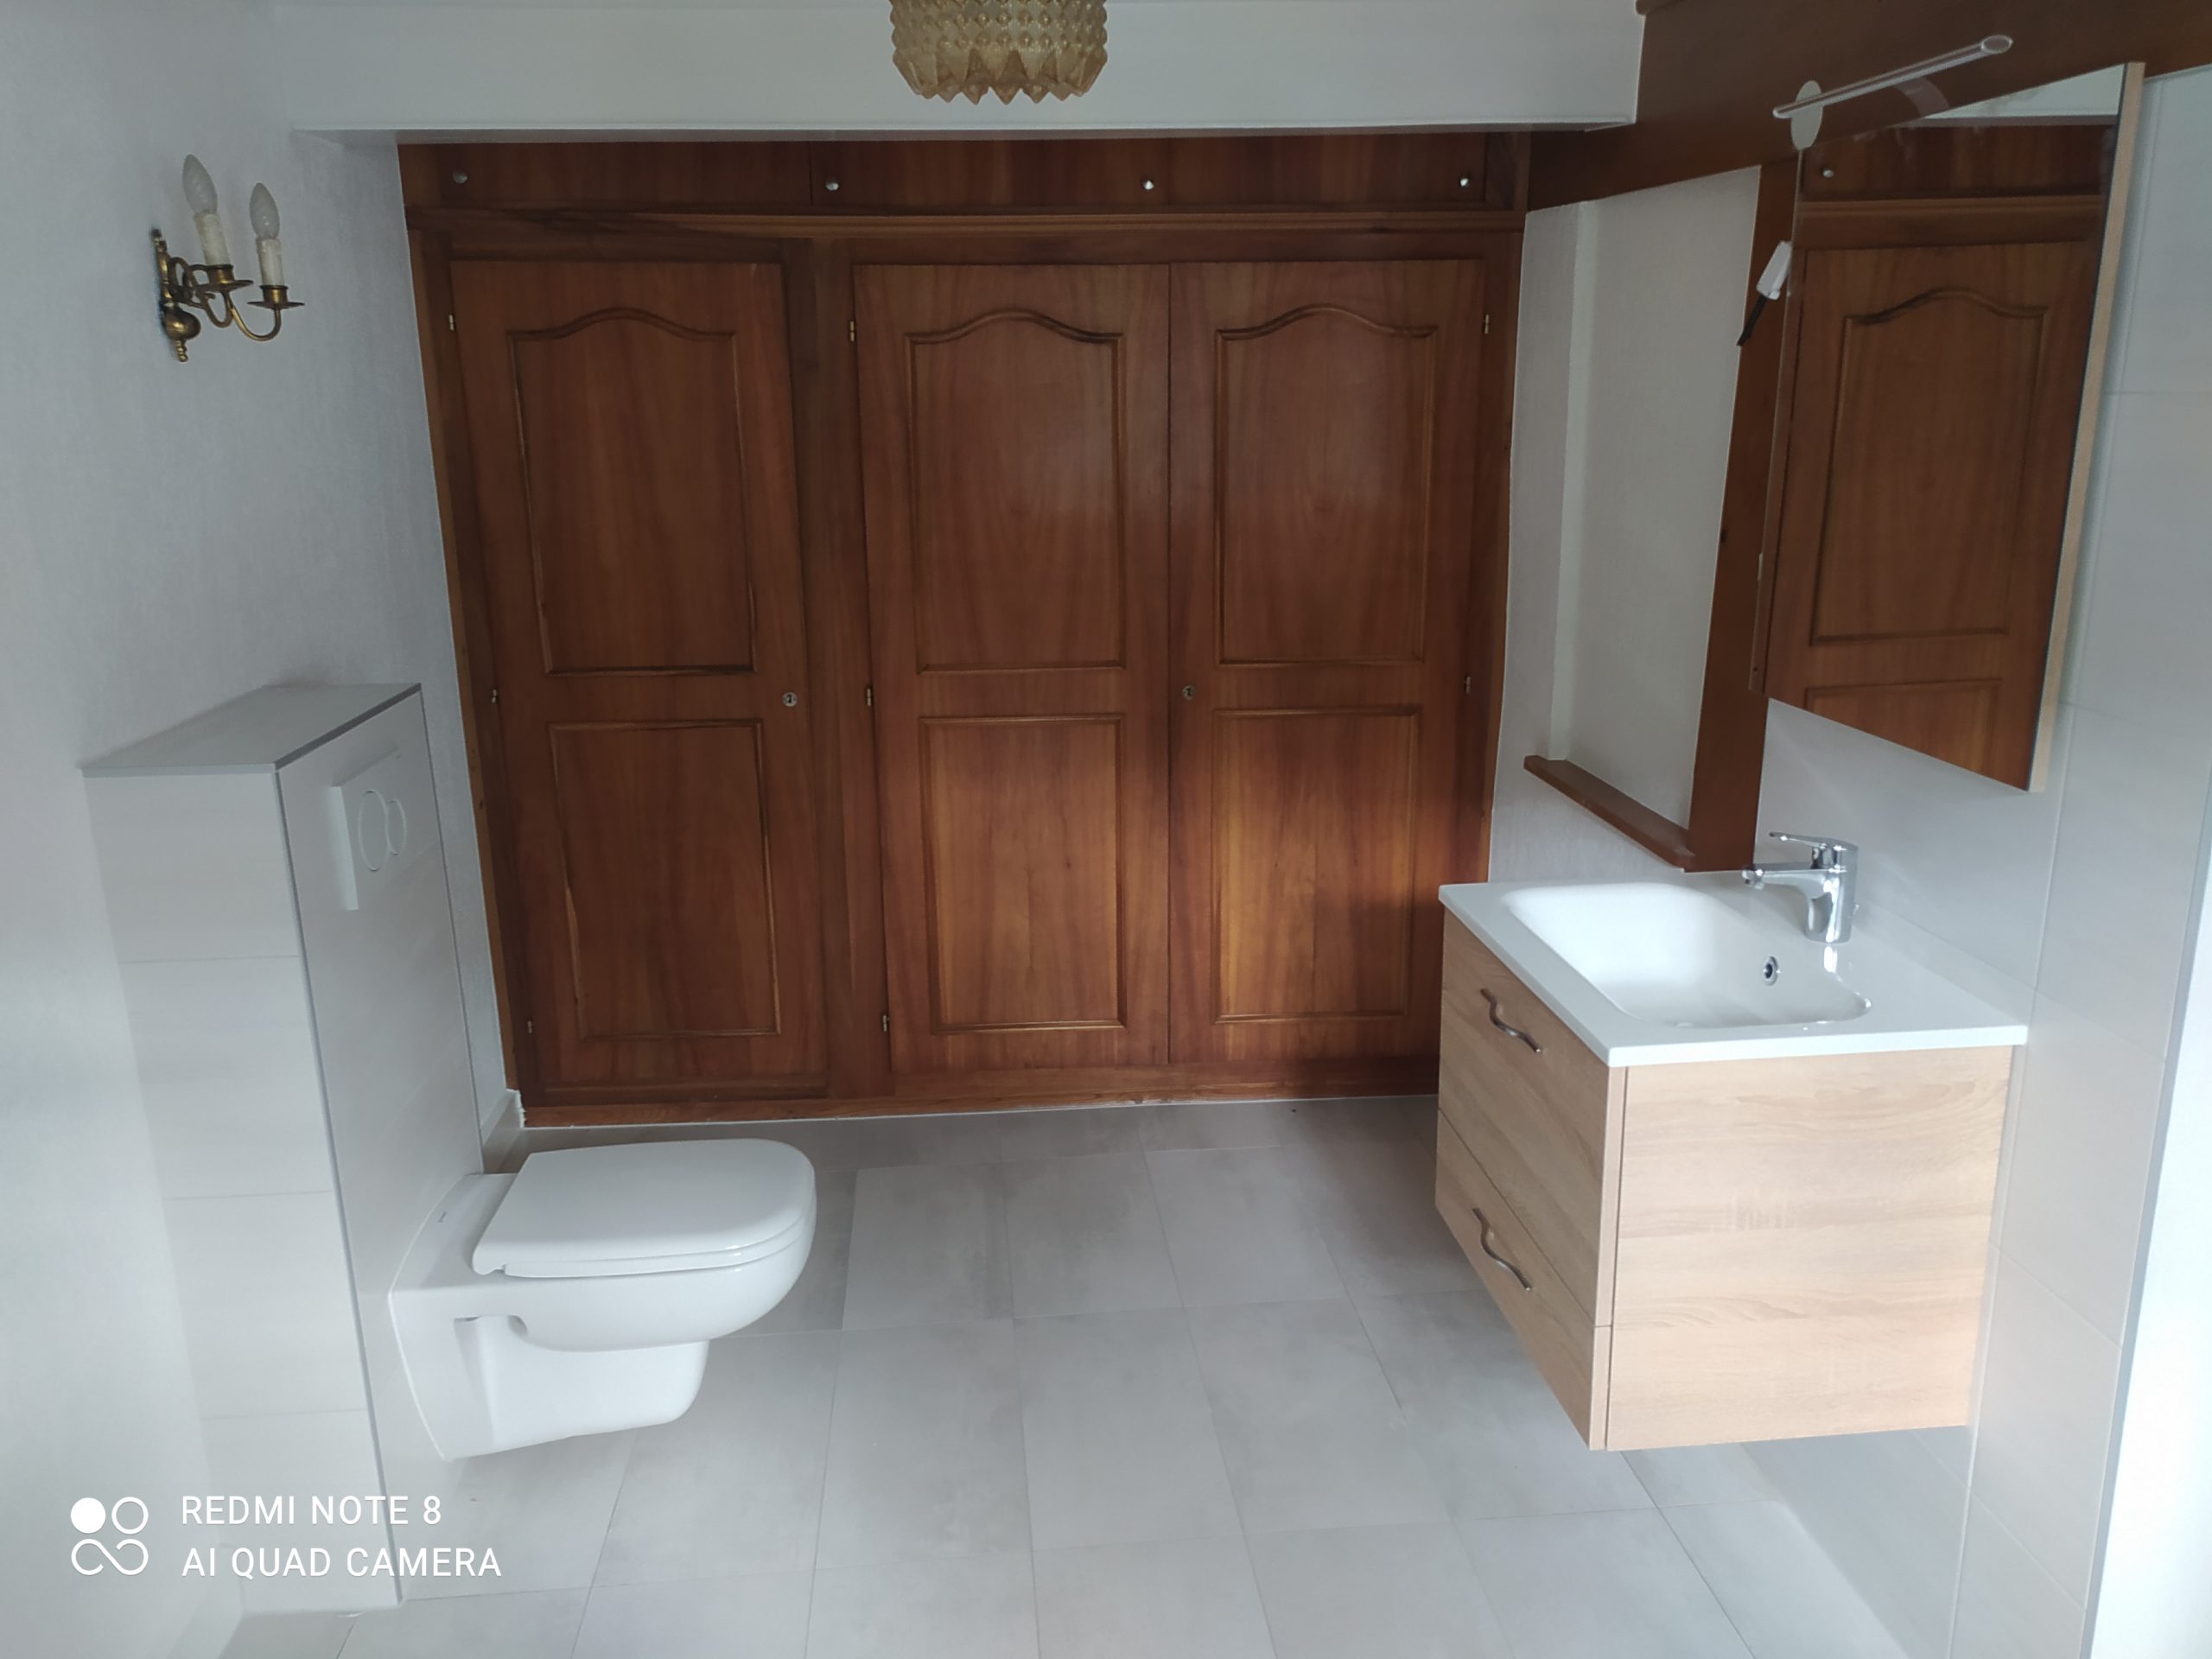 projet salle bain douche moderne bois toilette vasque apres